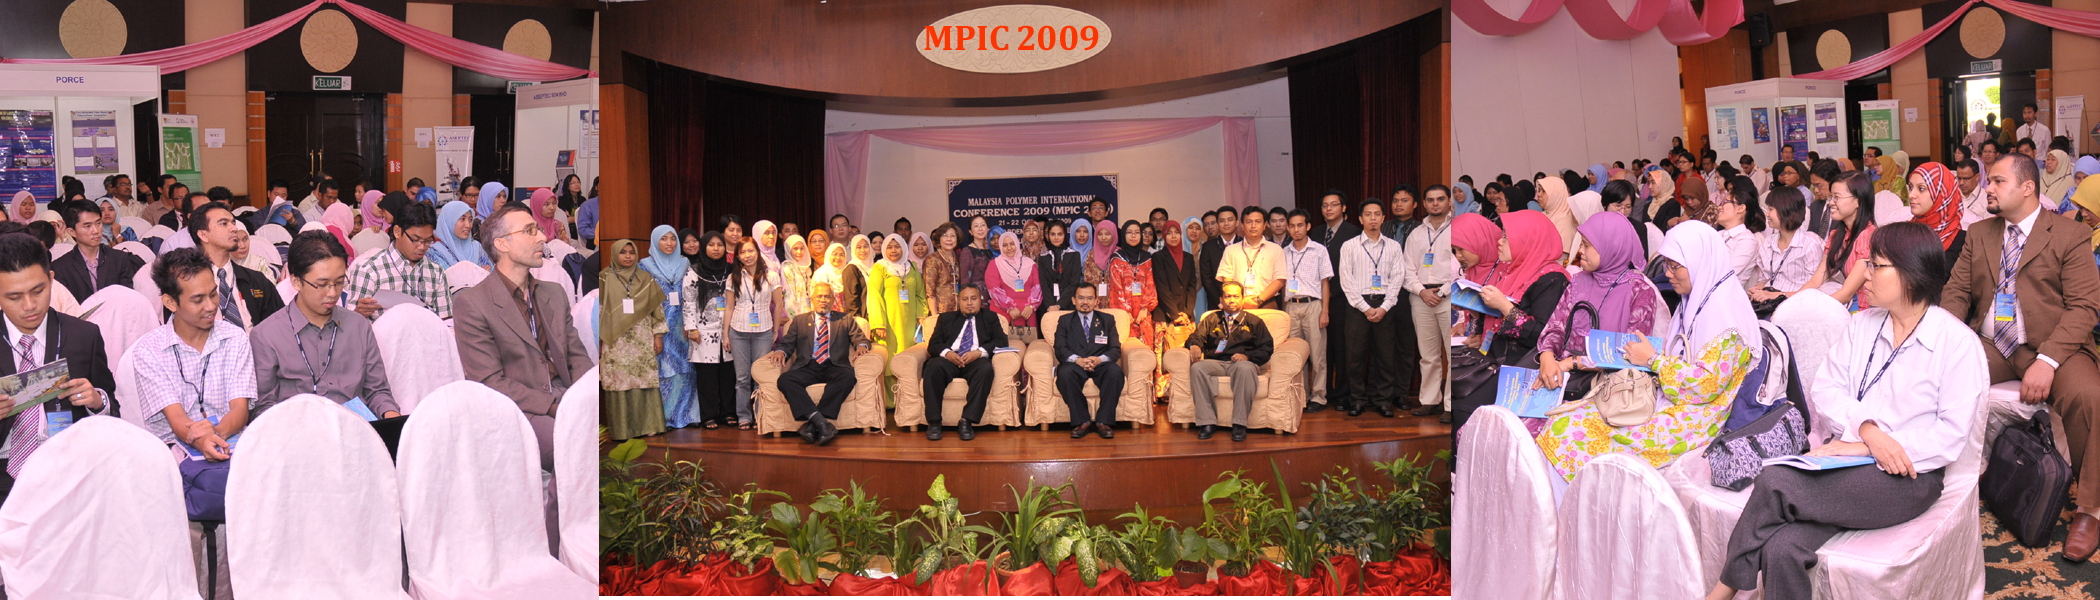 MPIC 2009